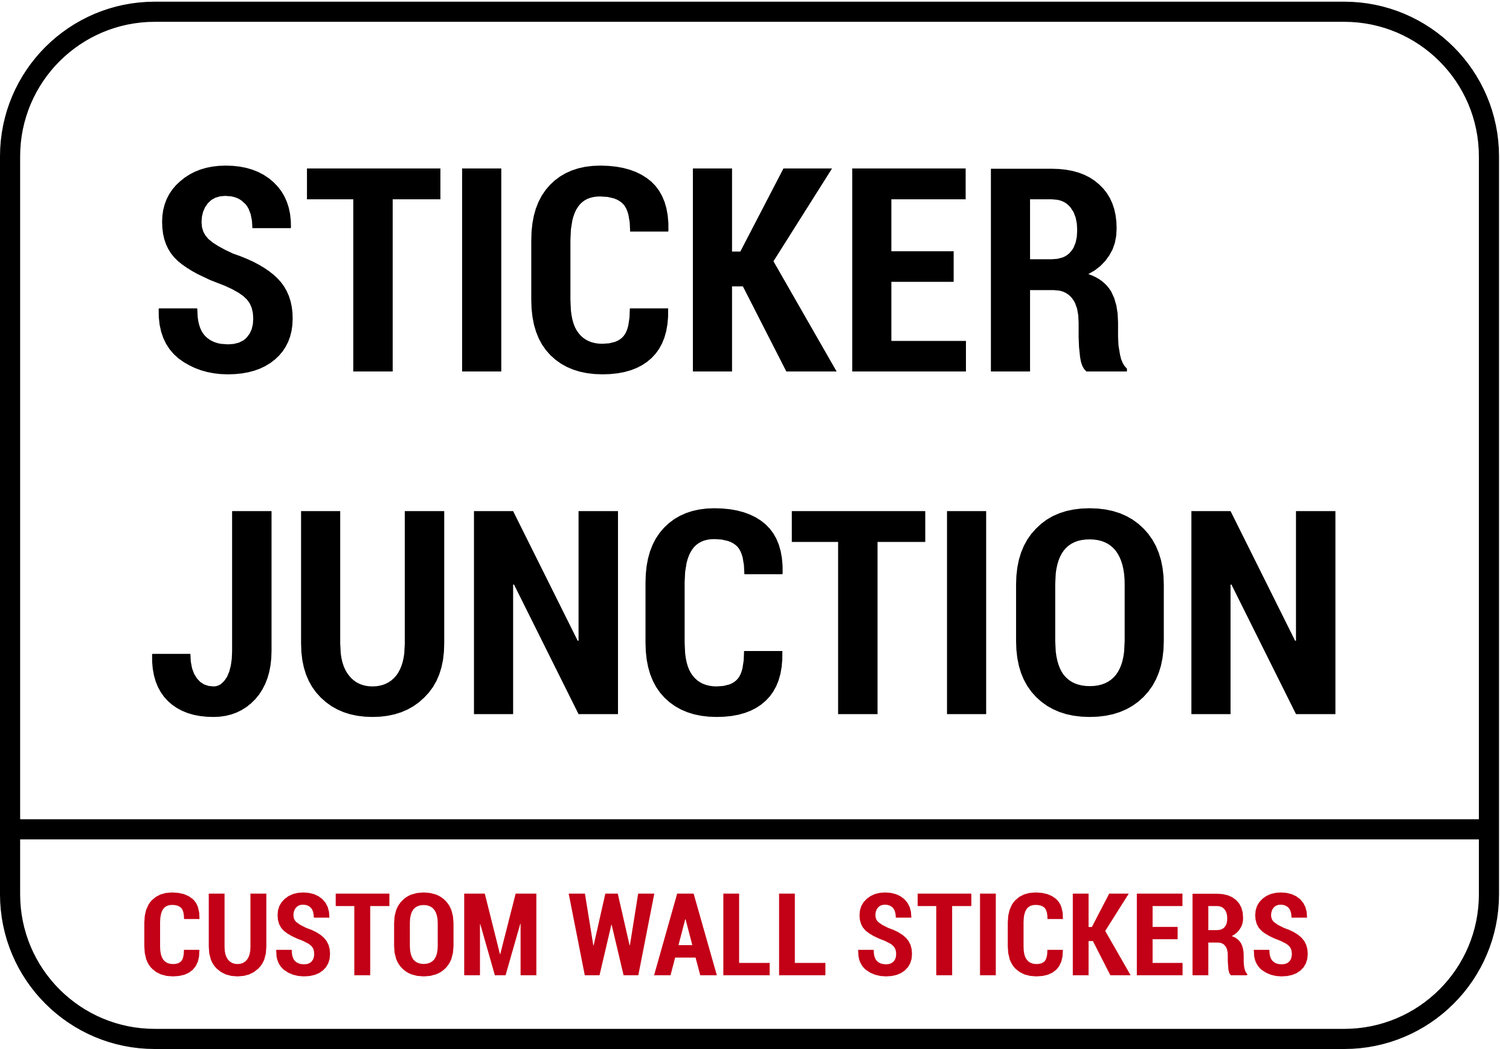 Sticker Junction